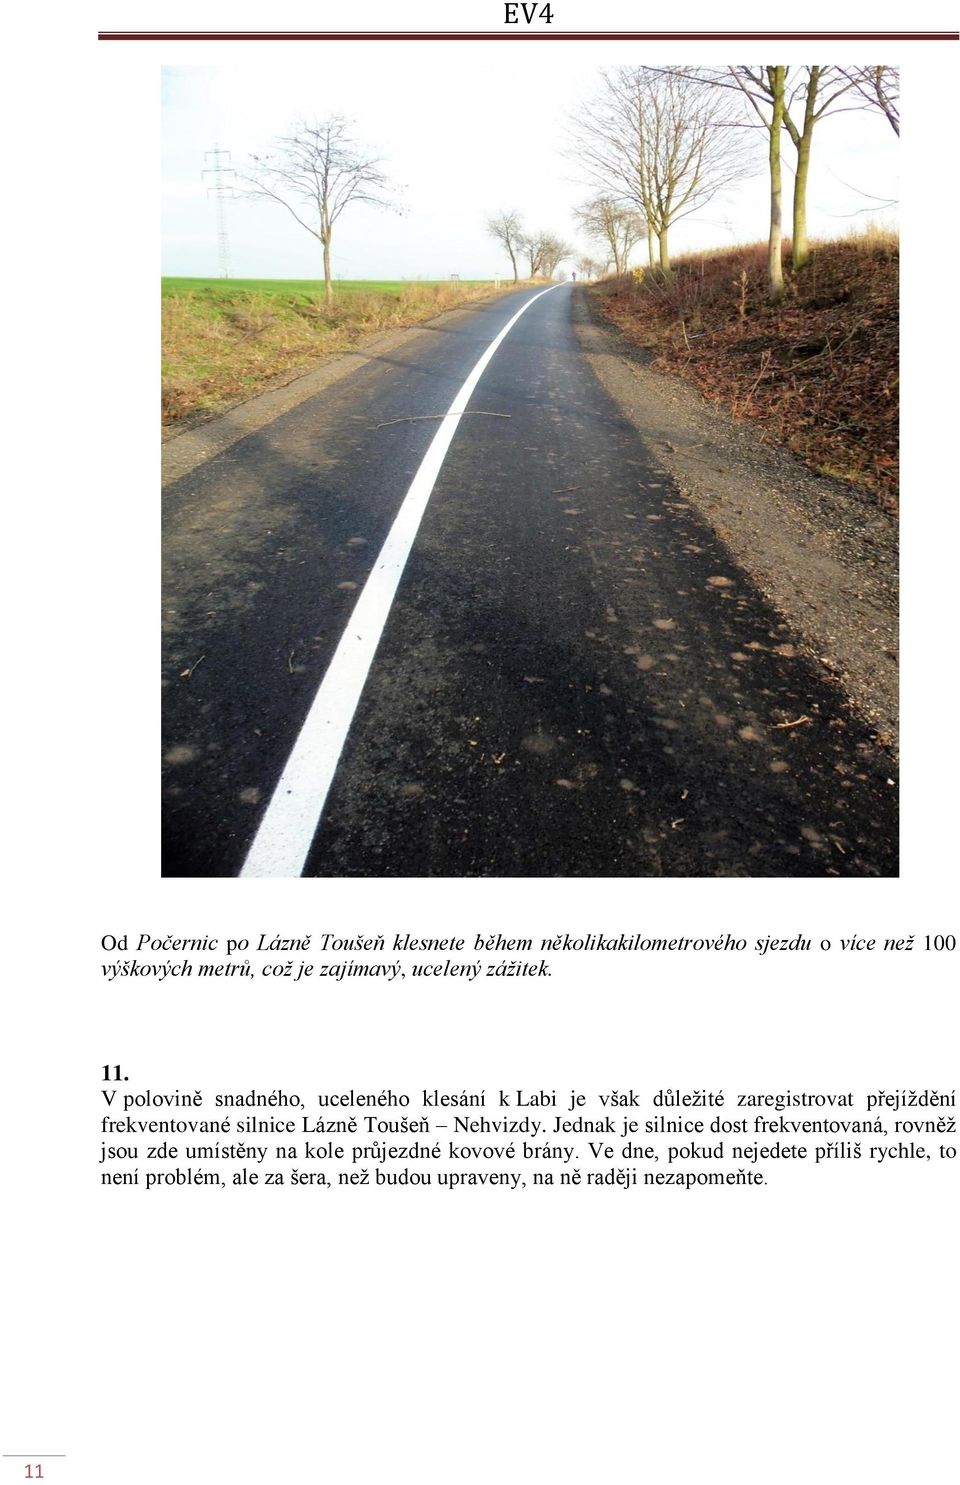 V polovině snadného, uceleného klesání k Labi je však důležité zaregistrovat přejíždění frekventované silnice Lázně